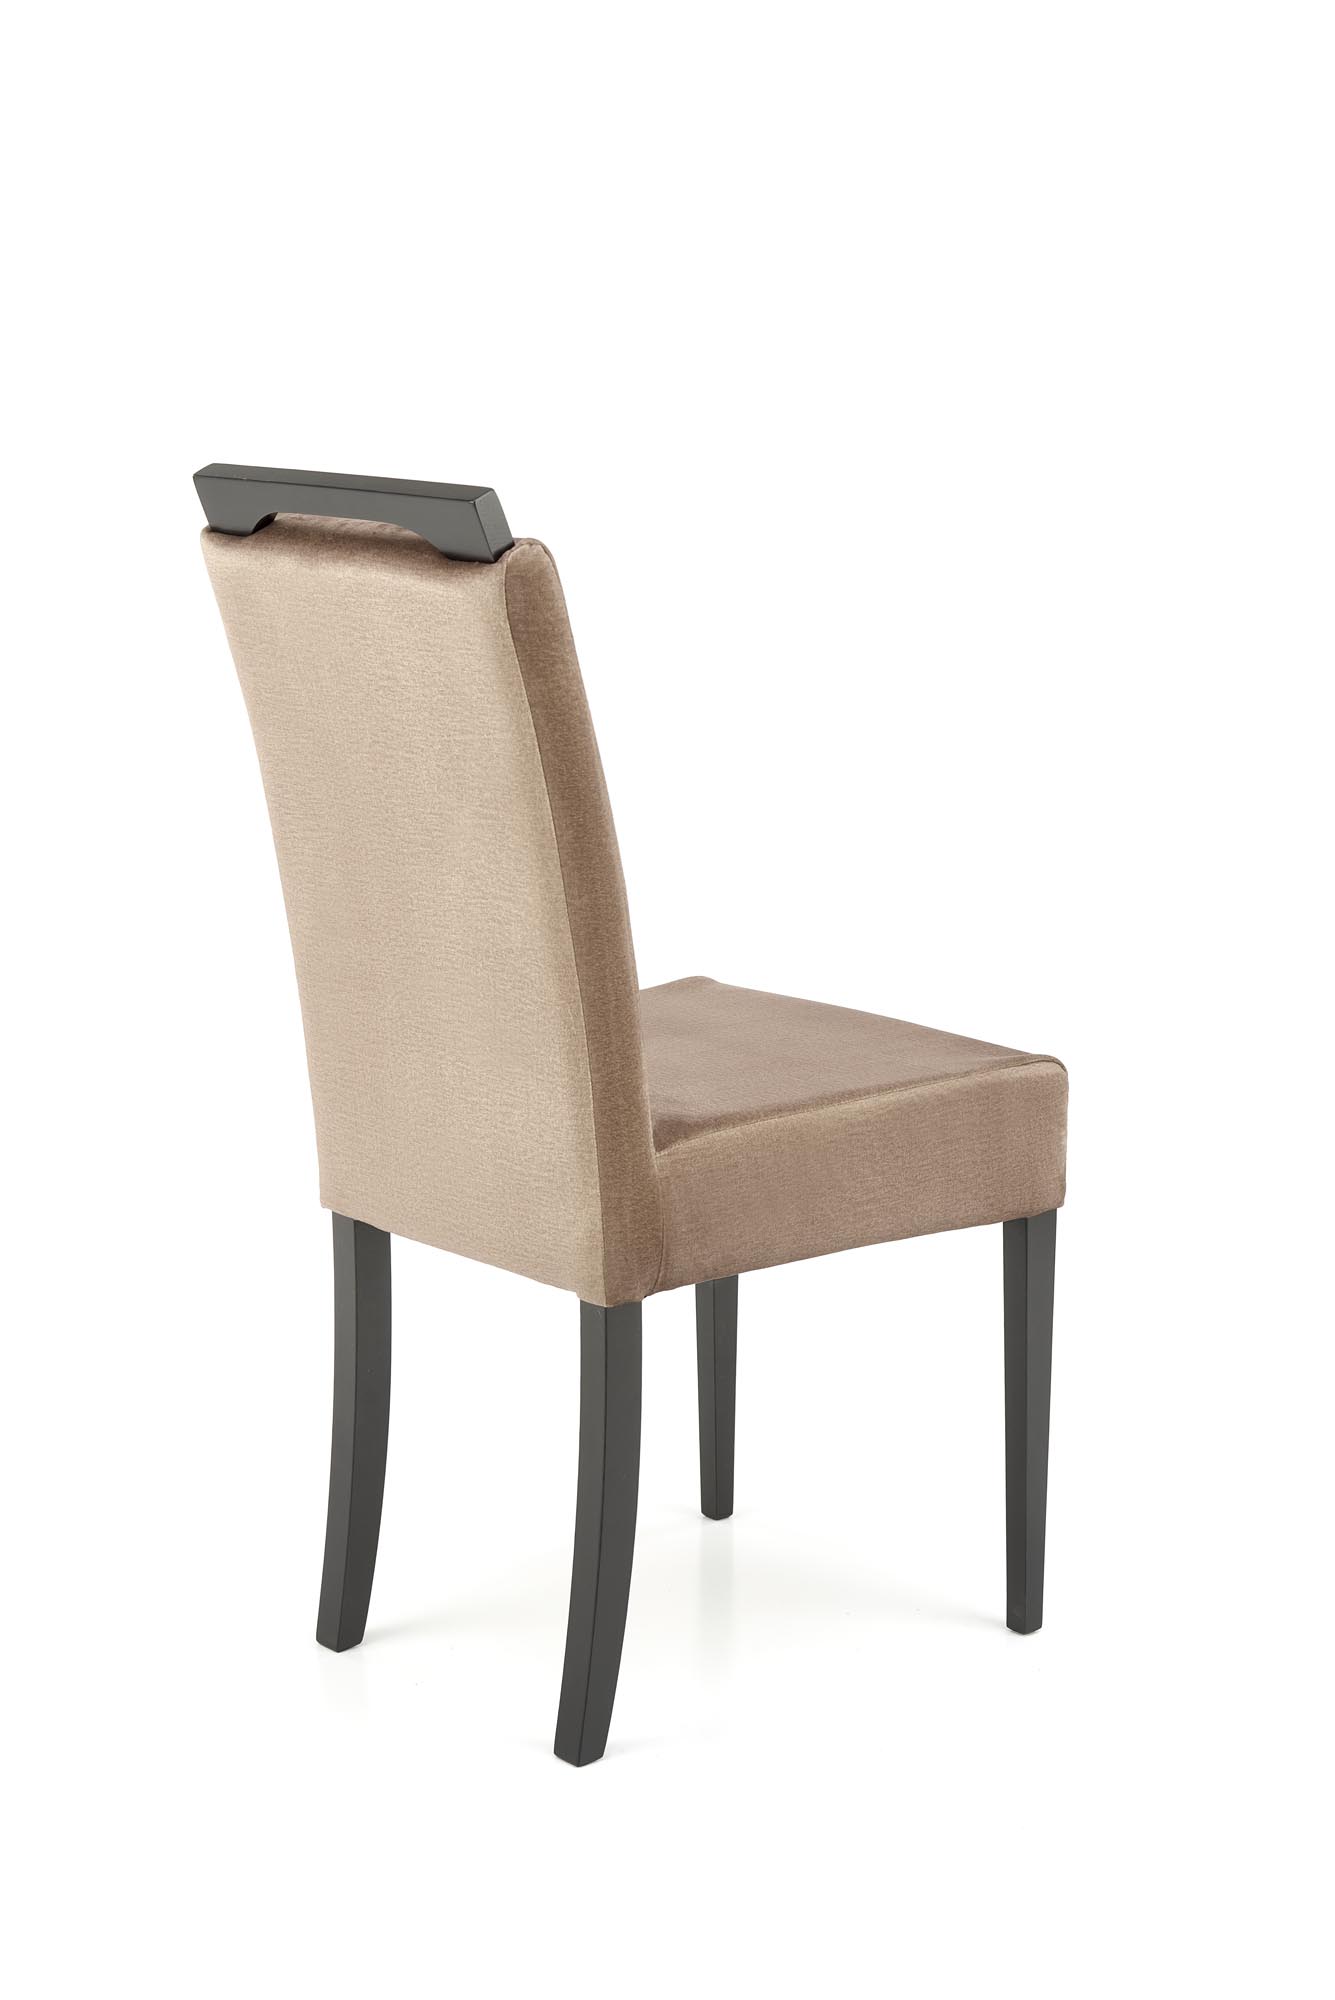 Krzesło tapicerowane Clarion 2 - czarny / beż krzesło tapicerowane clarion 2 - czarny / beż